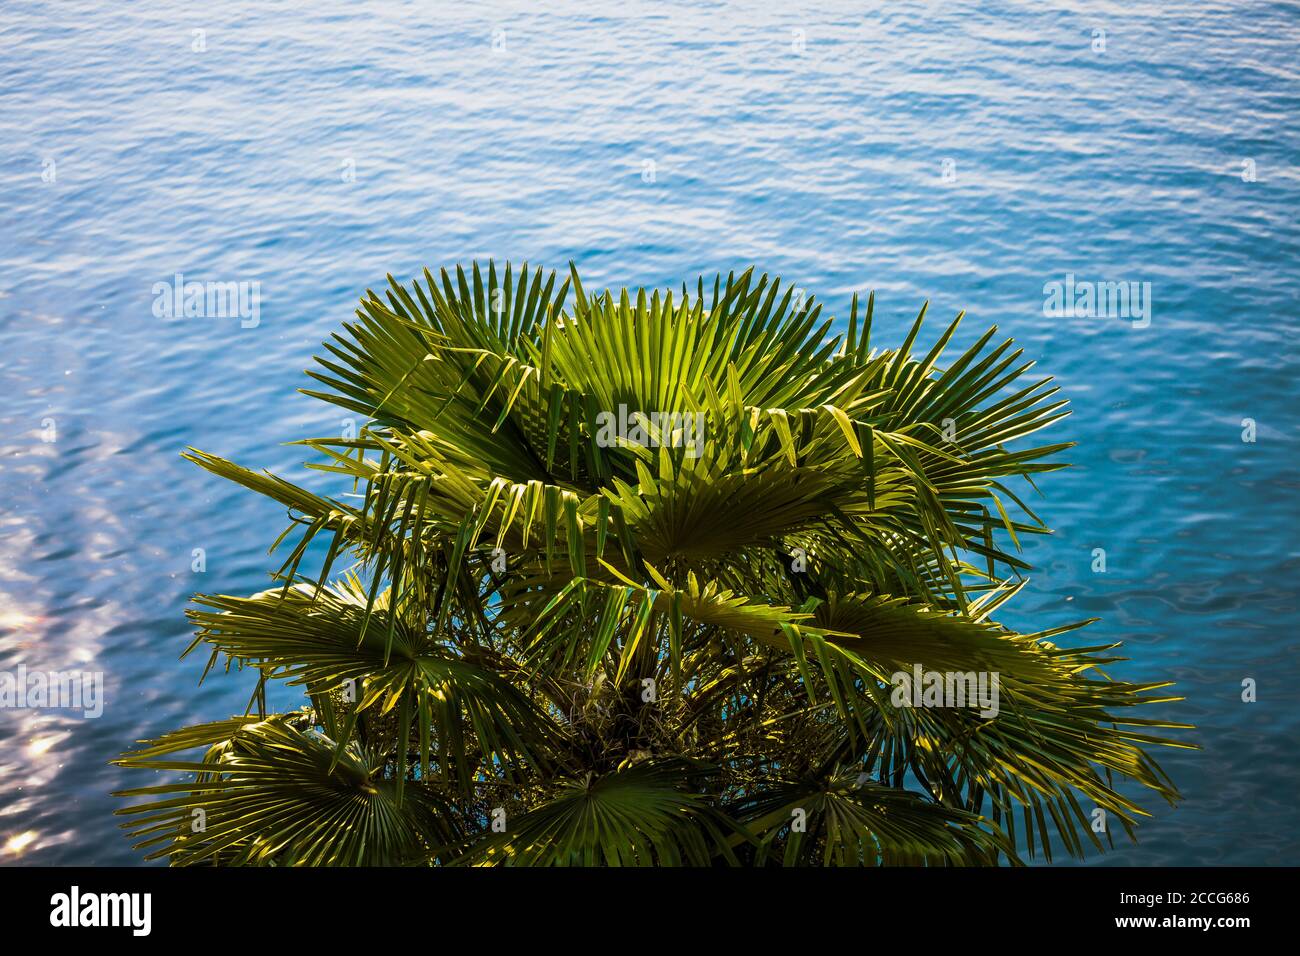 Europe, Italy, Lago di Garda, Limone sul Garda, palm trees on the lakeshore, Stock Photo